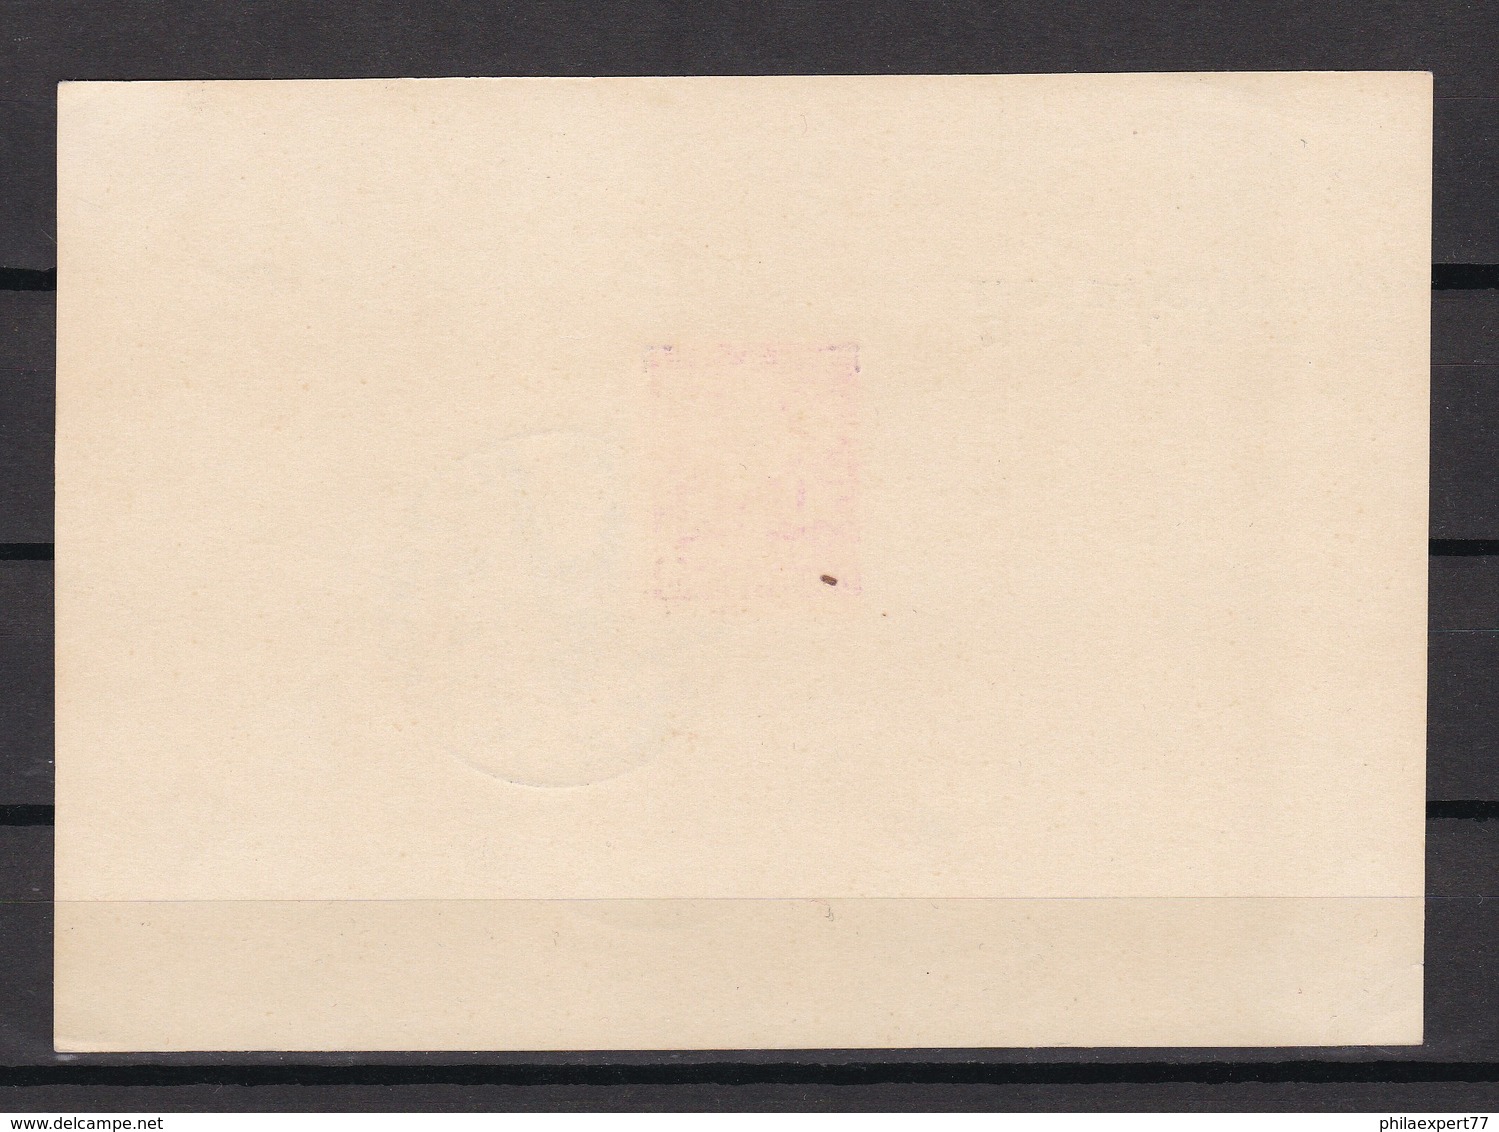 Generalgouvernement - 1940 - Michel Nr. 24 - Spendenkarte - Sonderstempel - Besetzungen 1938-45